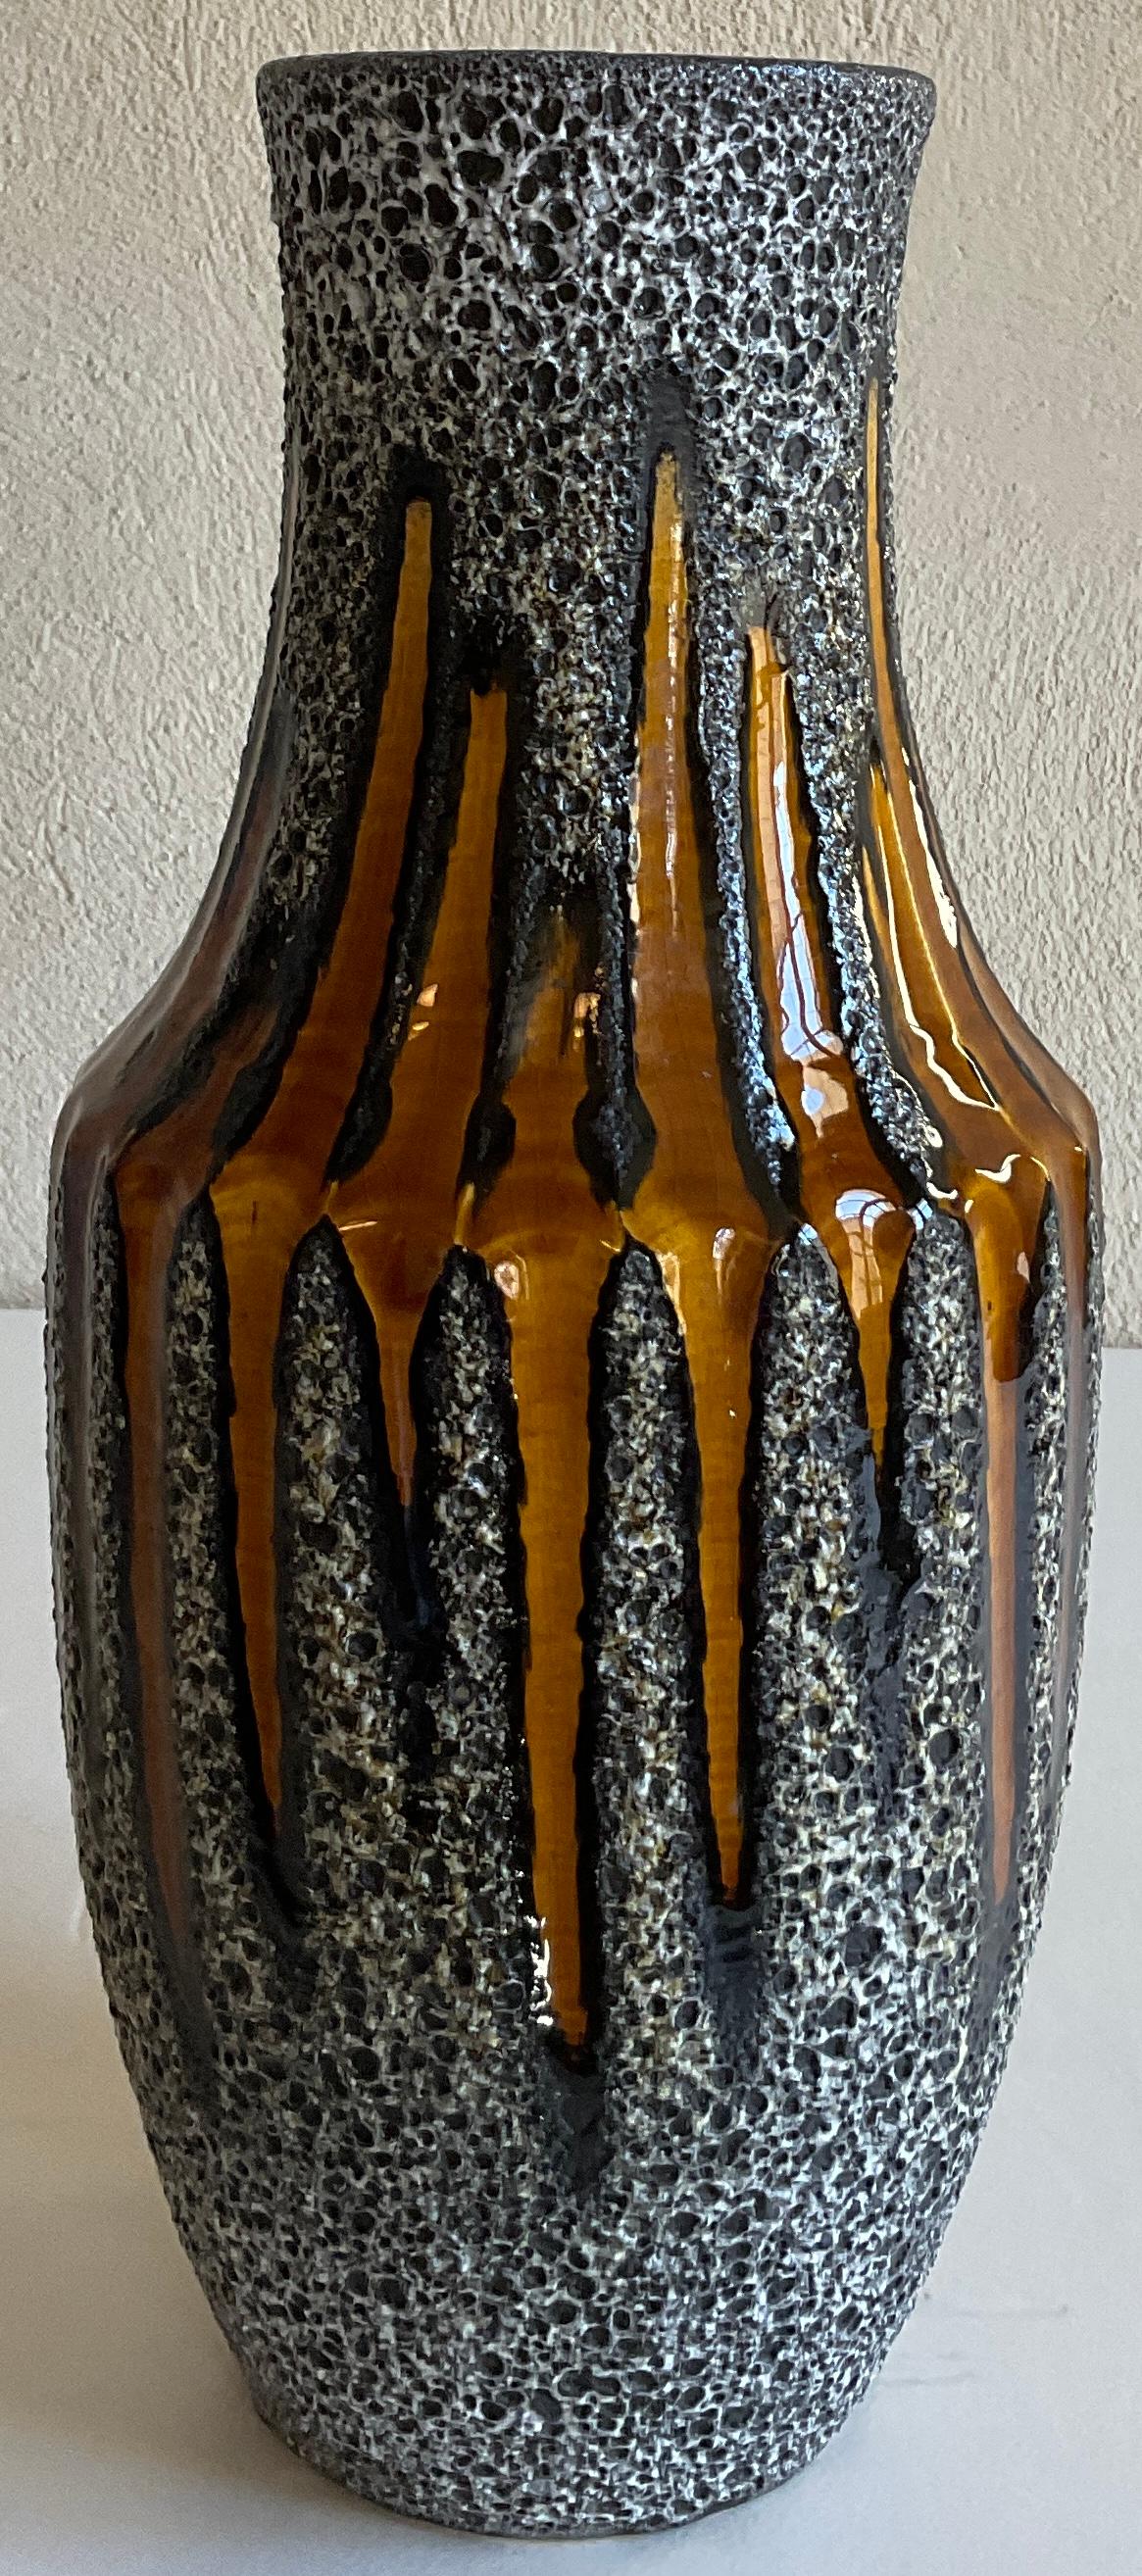 Ein sehr sammelwürdiges Stück aus der Mitte des Jahrhunderts  West Germany Studio Pottery Vase. Diese Vase mit Vintage-Griff besticht durch Details aus der Mitte des Jahrhunderts und dezente Erdtöne.   Ein großartiges dekoratives Stück mit